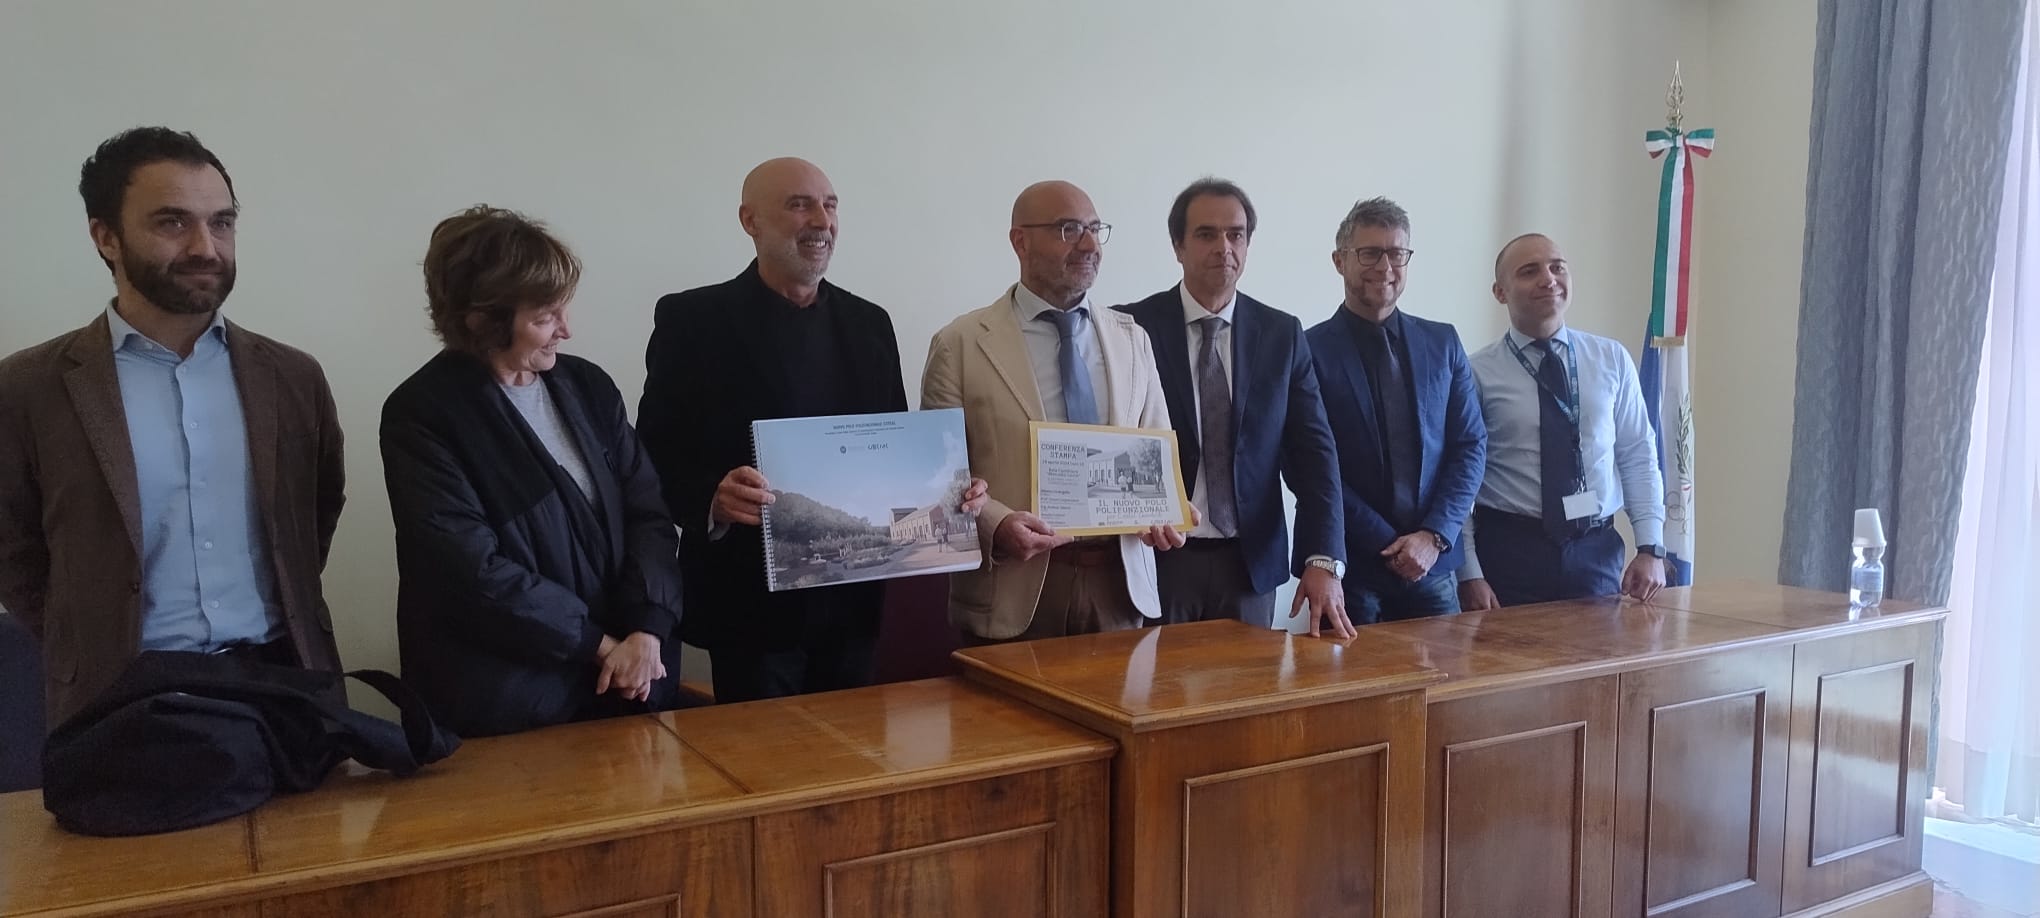 Conferenza stampa presentazione nuovo polo polifunzionale Cotral a Castel Gandolfo